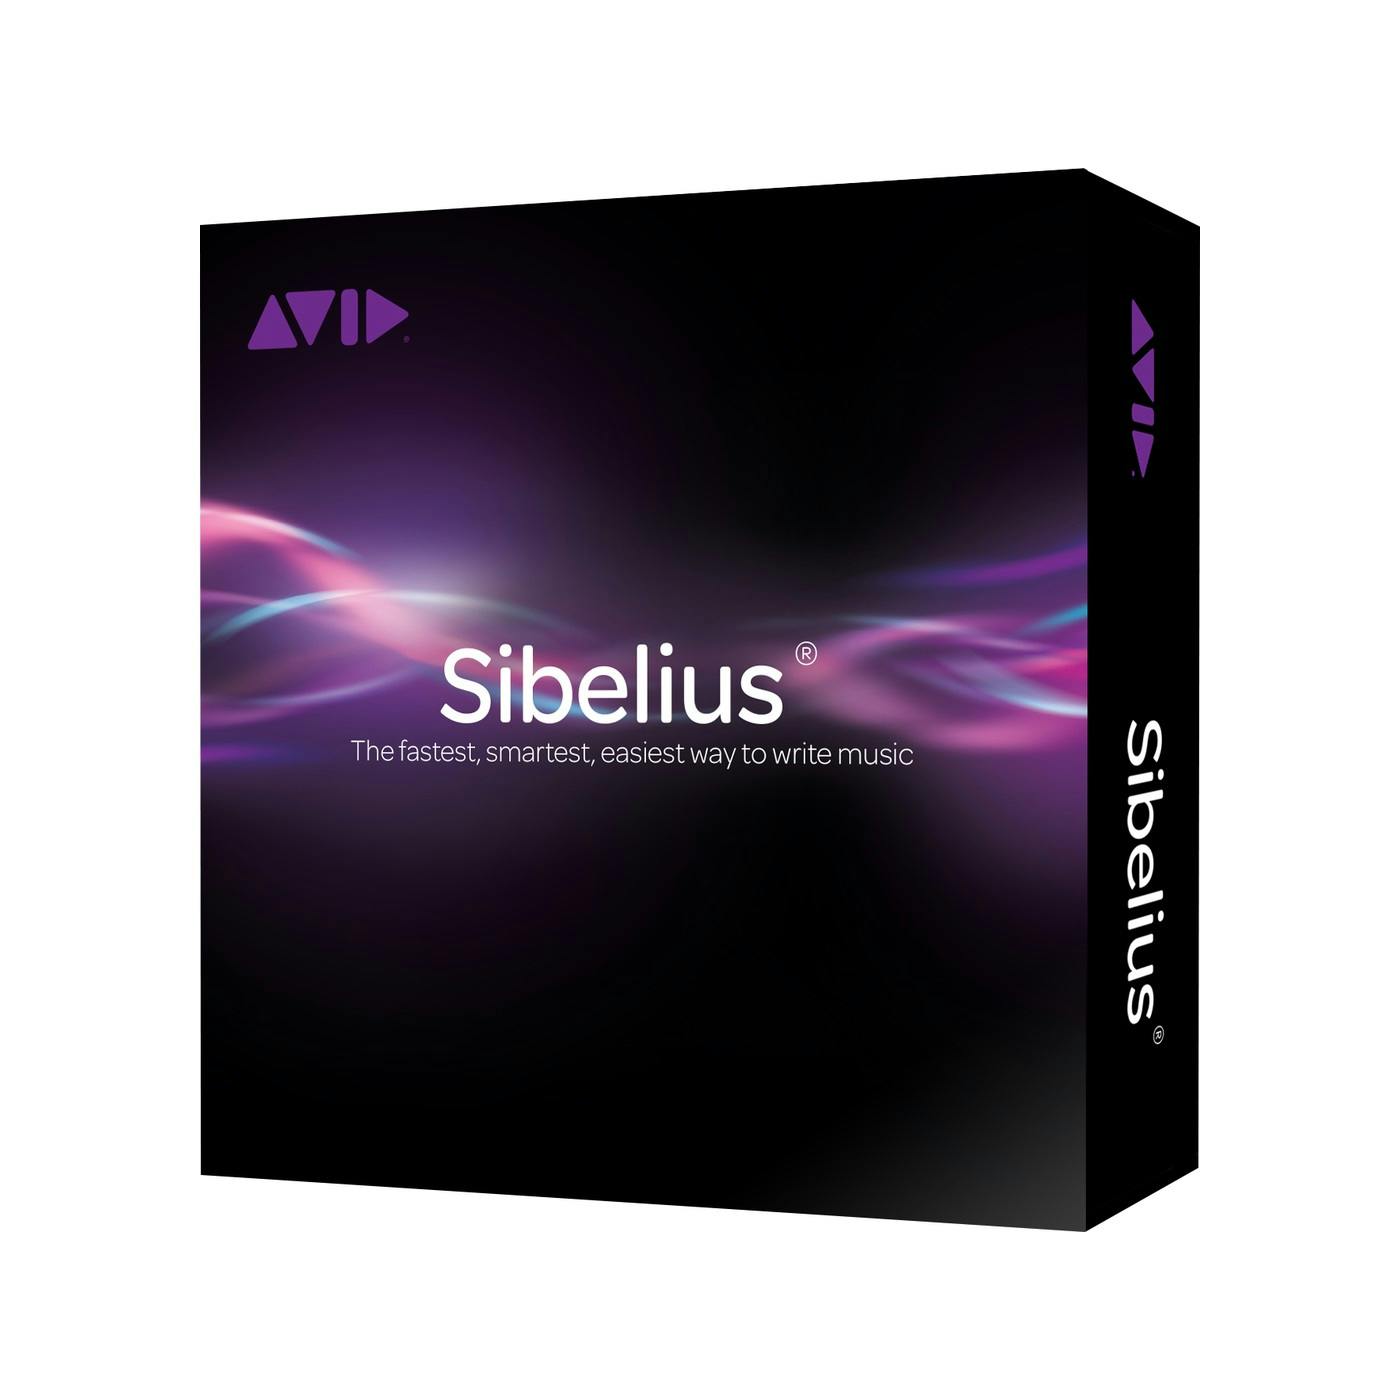 sibelius 8 sounds update